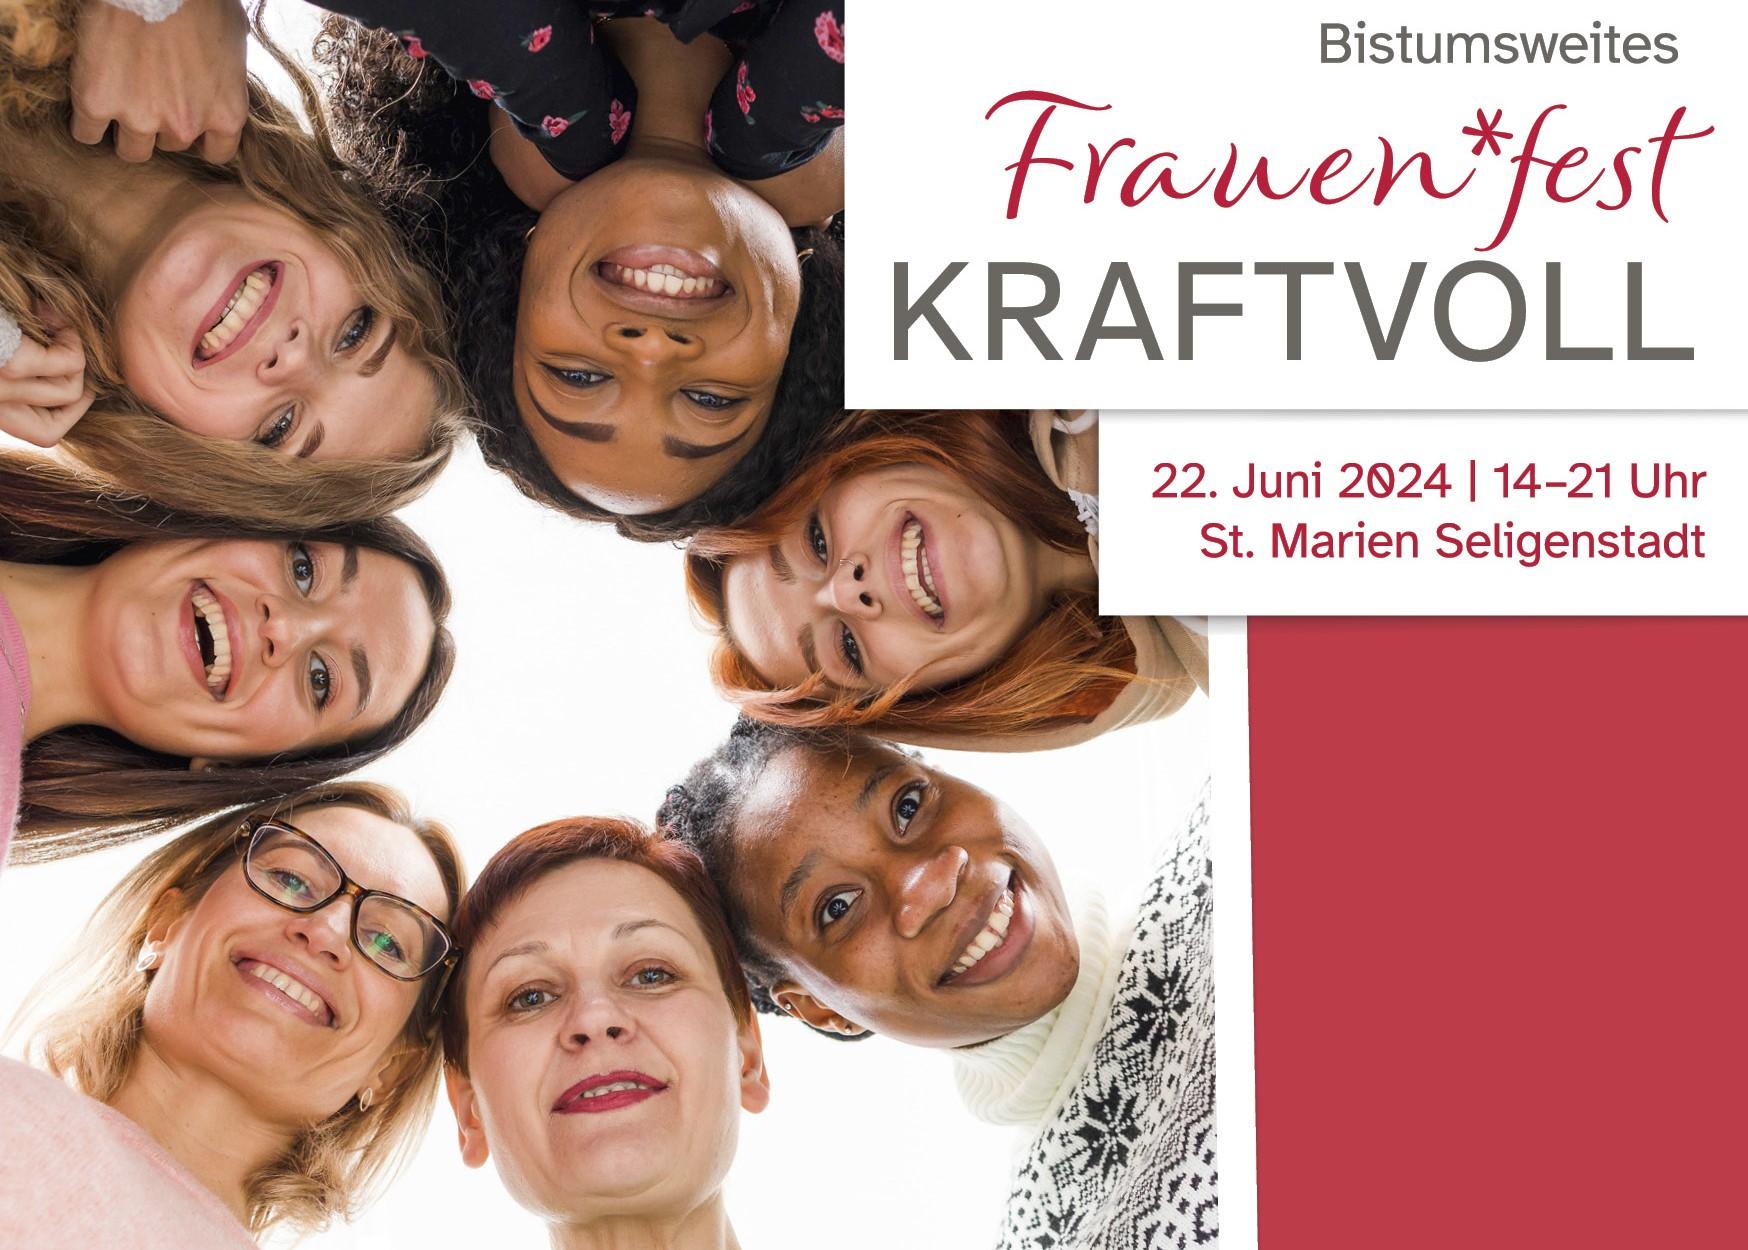 Frauen*fest KRAFTVOLL (c) Frauenpastoral Bistum Mainz